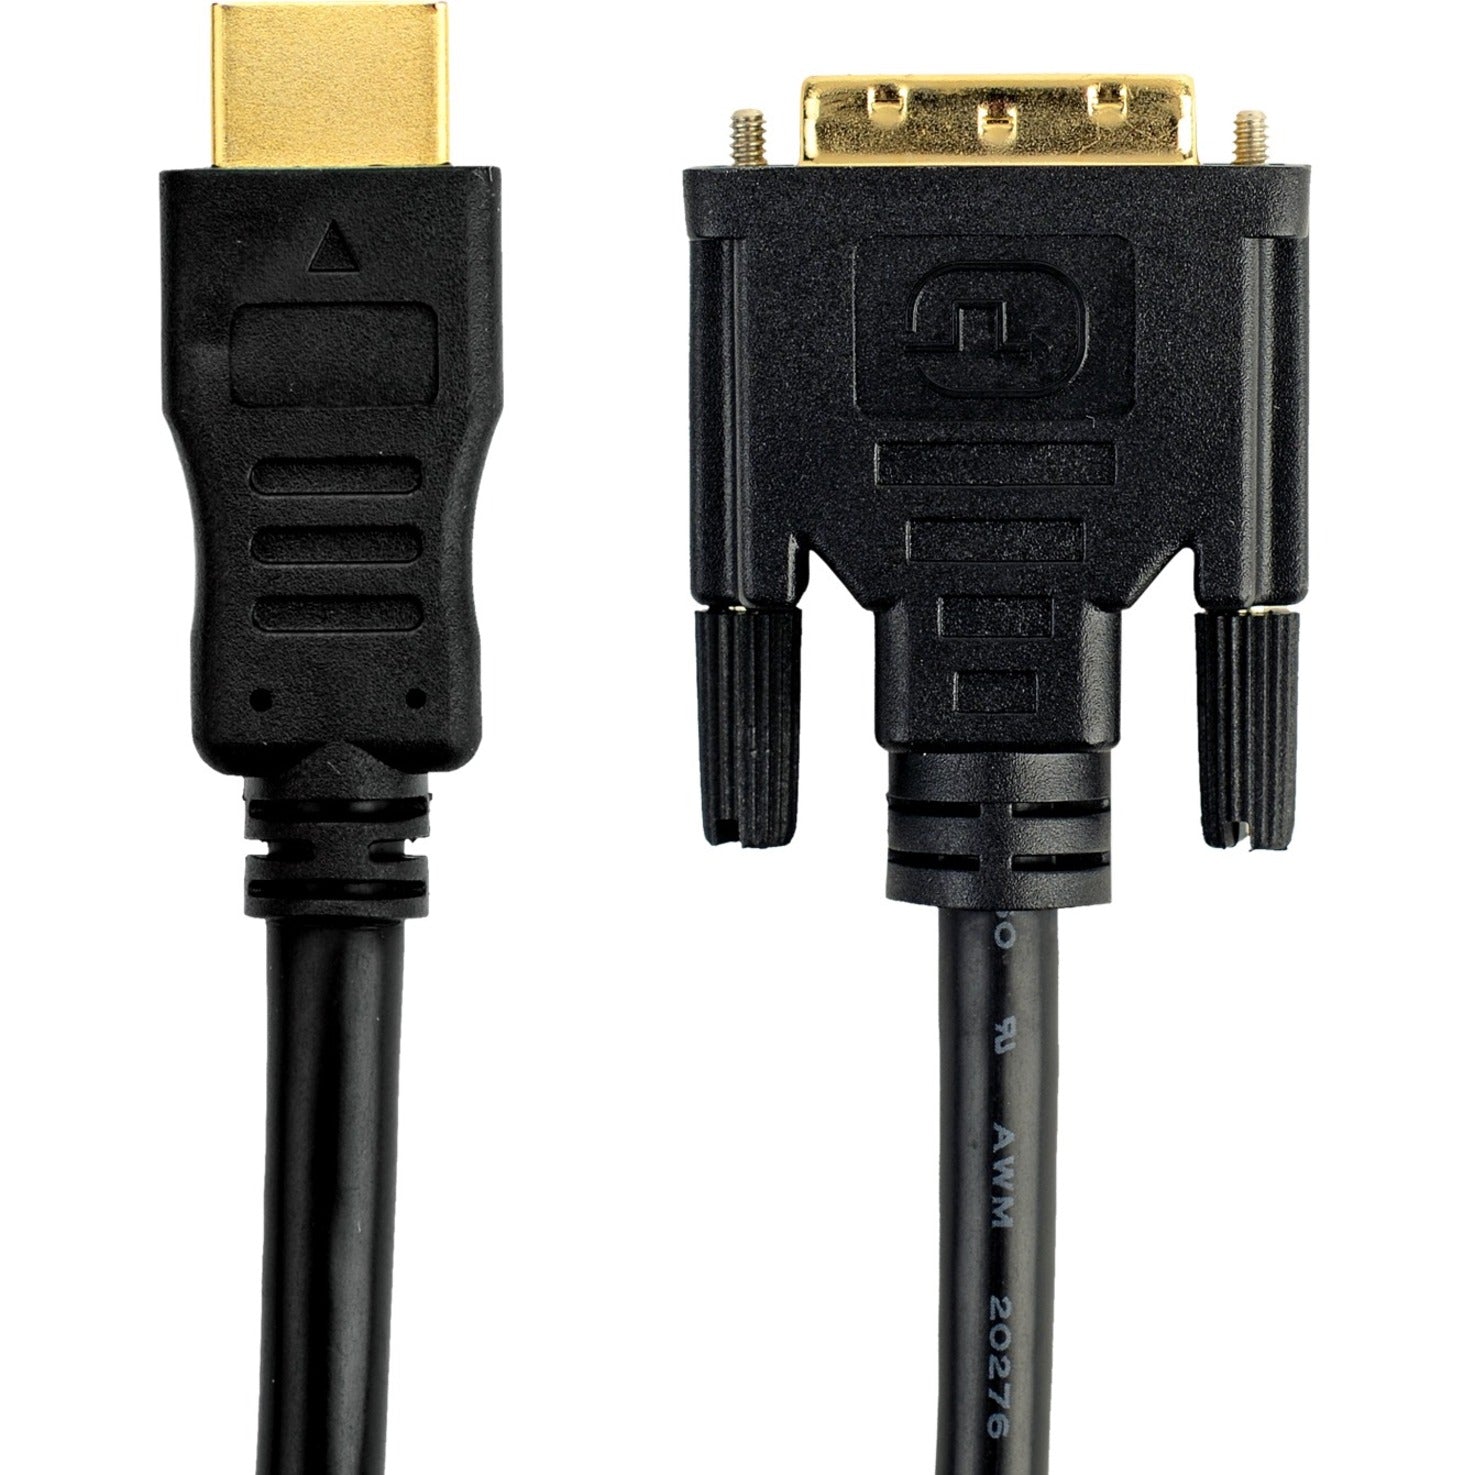 Belkin F2E8242b03 HDMI to DVI Cable，3英尺，终身保修，替代F2E8171系列 贝尔金 Belkin